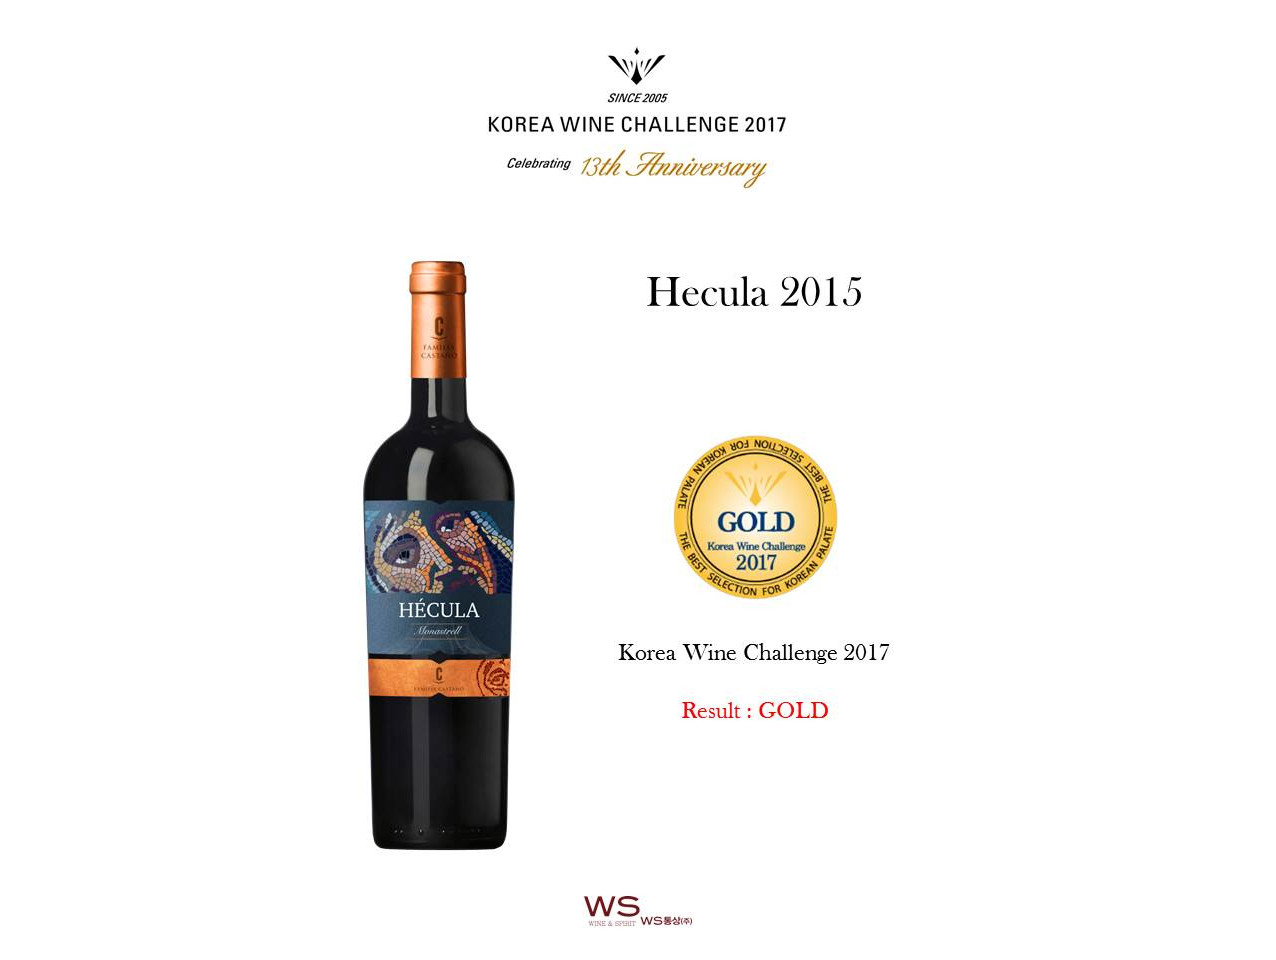  Hécula 2015  medalla de ORO en The Korea Wine Challenge 2017